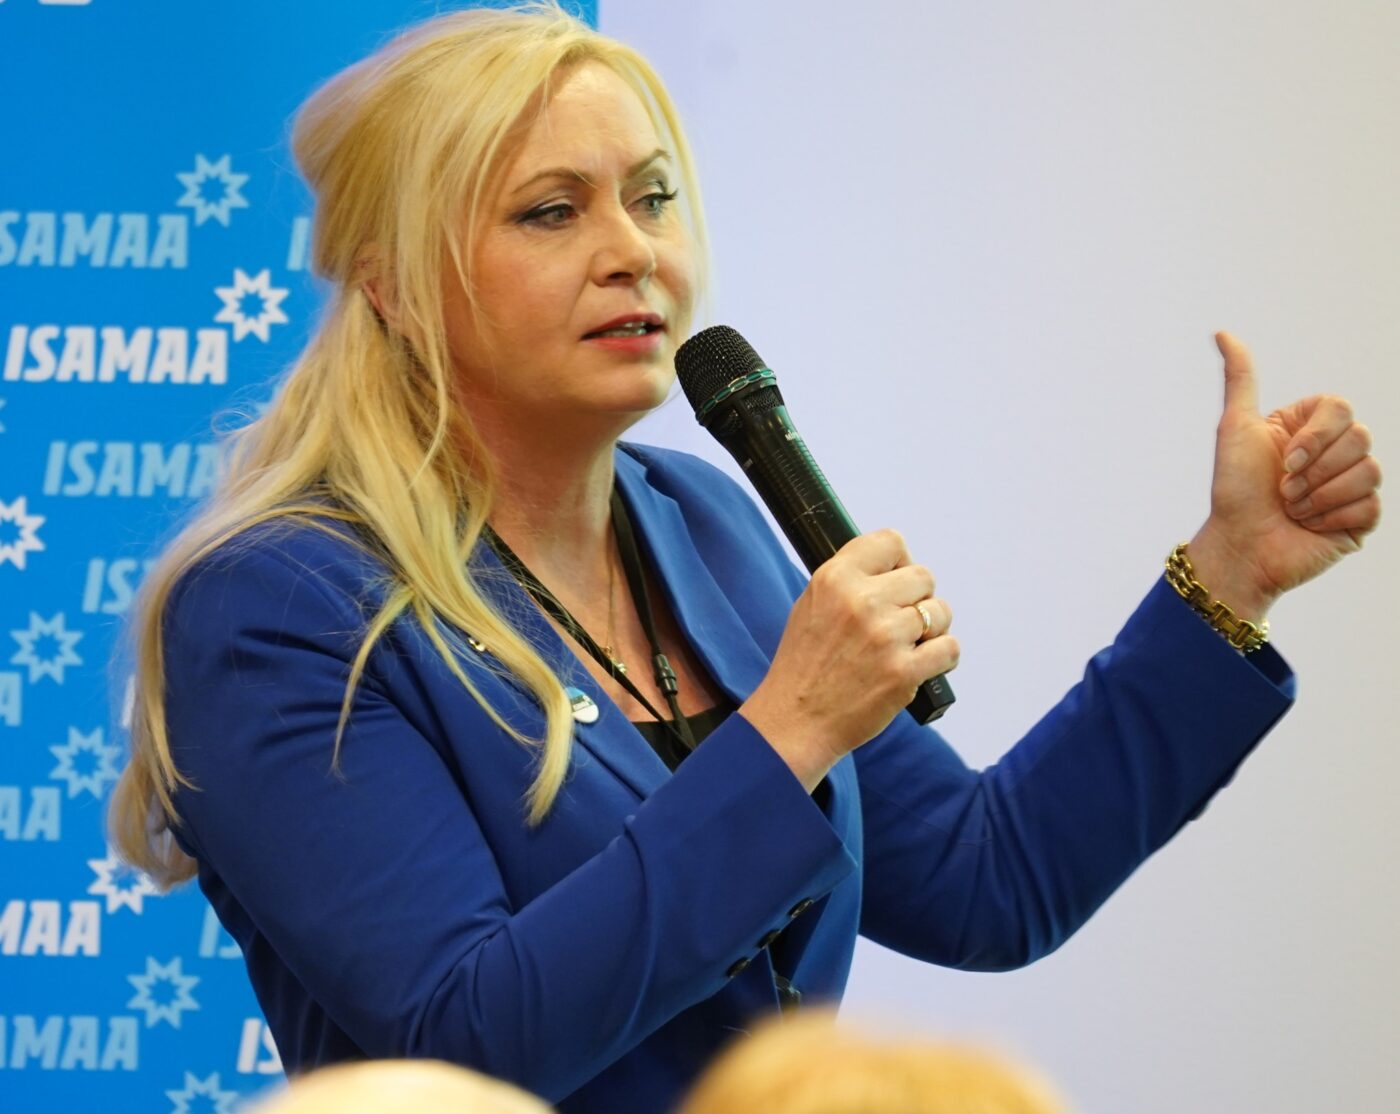 Isamaa Tallinna piirkonna juhiks valiti Riina Solman